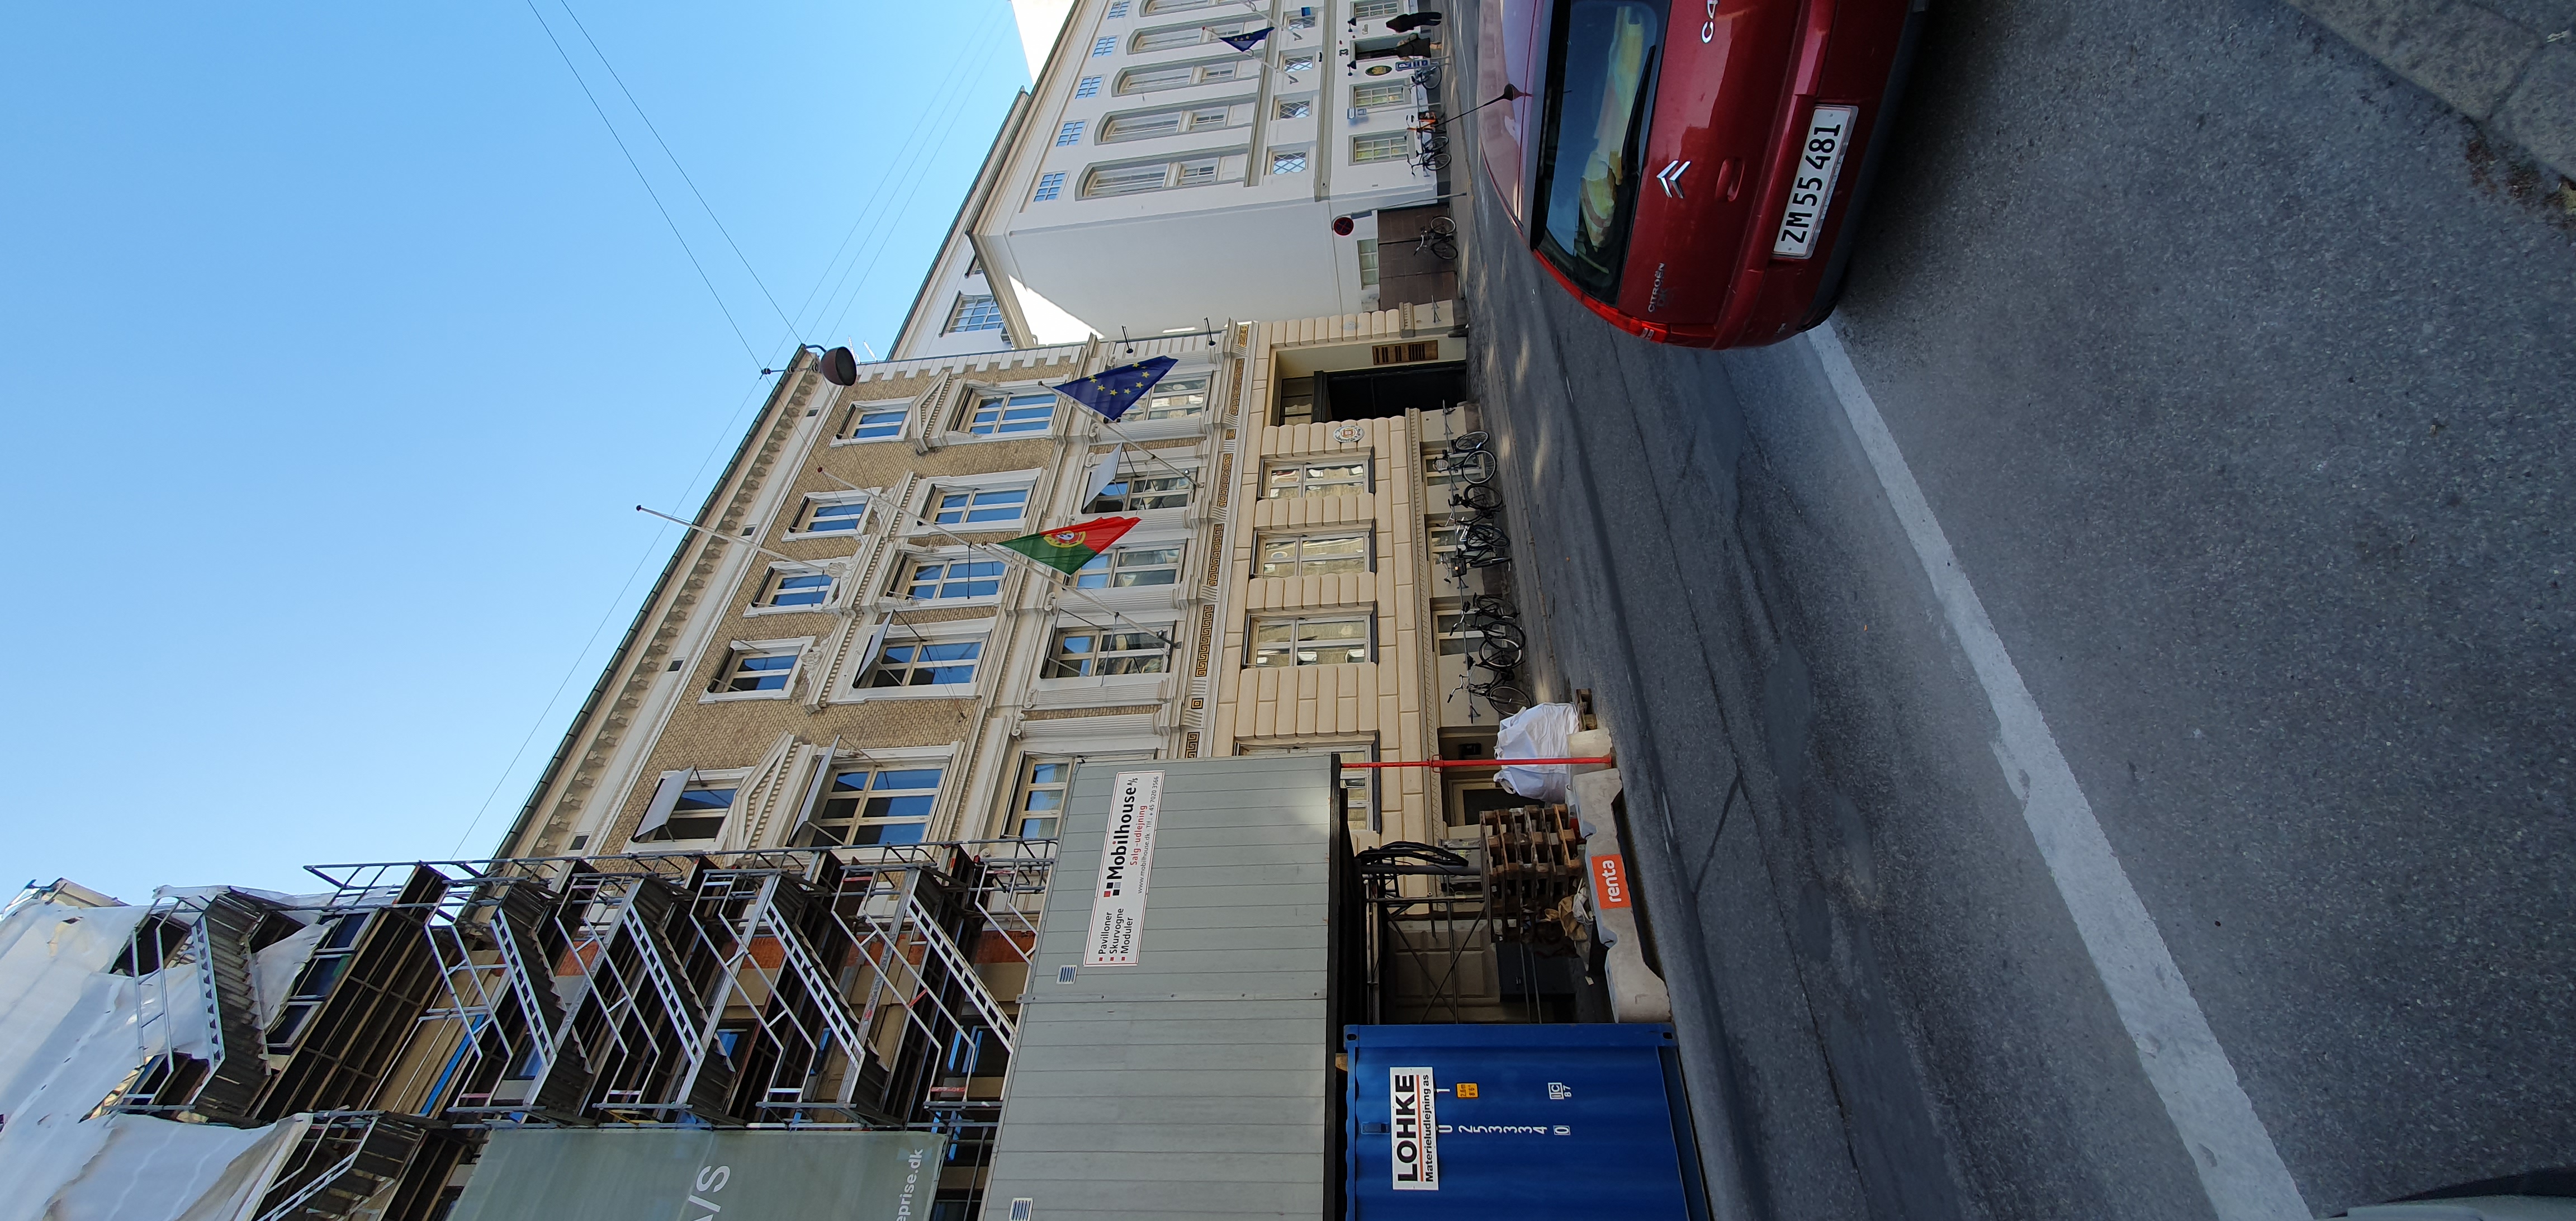 Embaixada de Portugal em Copenhaga